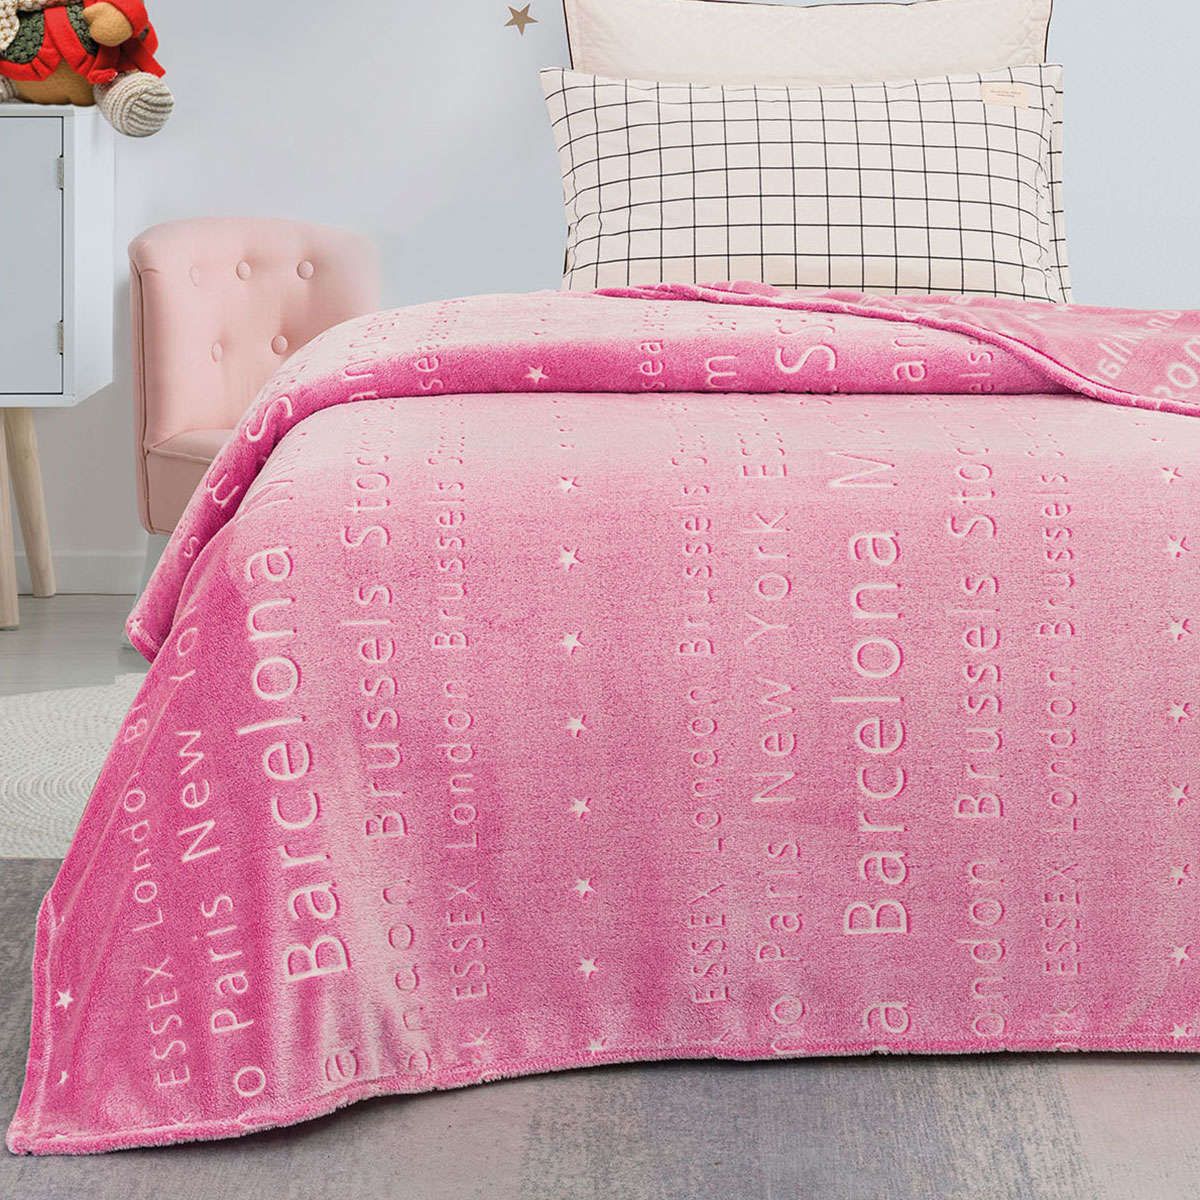 Παιδική κουβέρτα μονή φωσφορίζουσα Flash Art 6134 pink beauty home